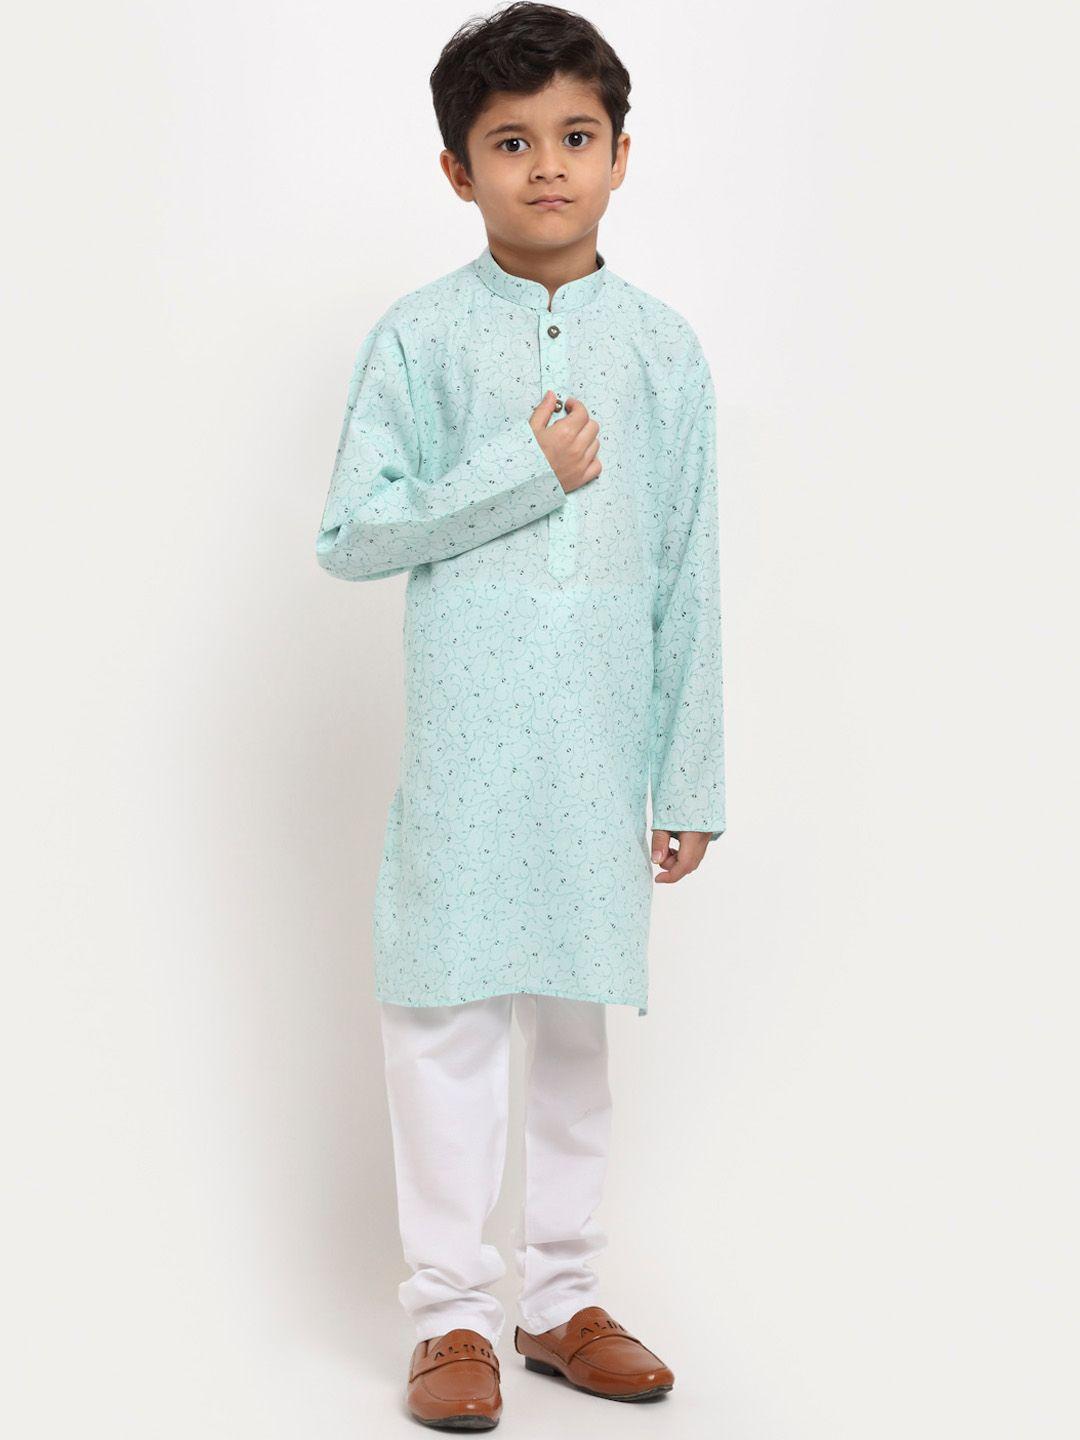 kraft india boys floral printed pure cotton kurta with pyjamas